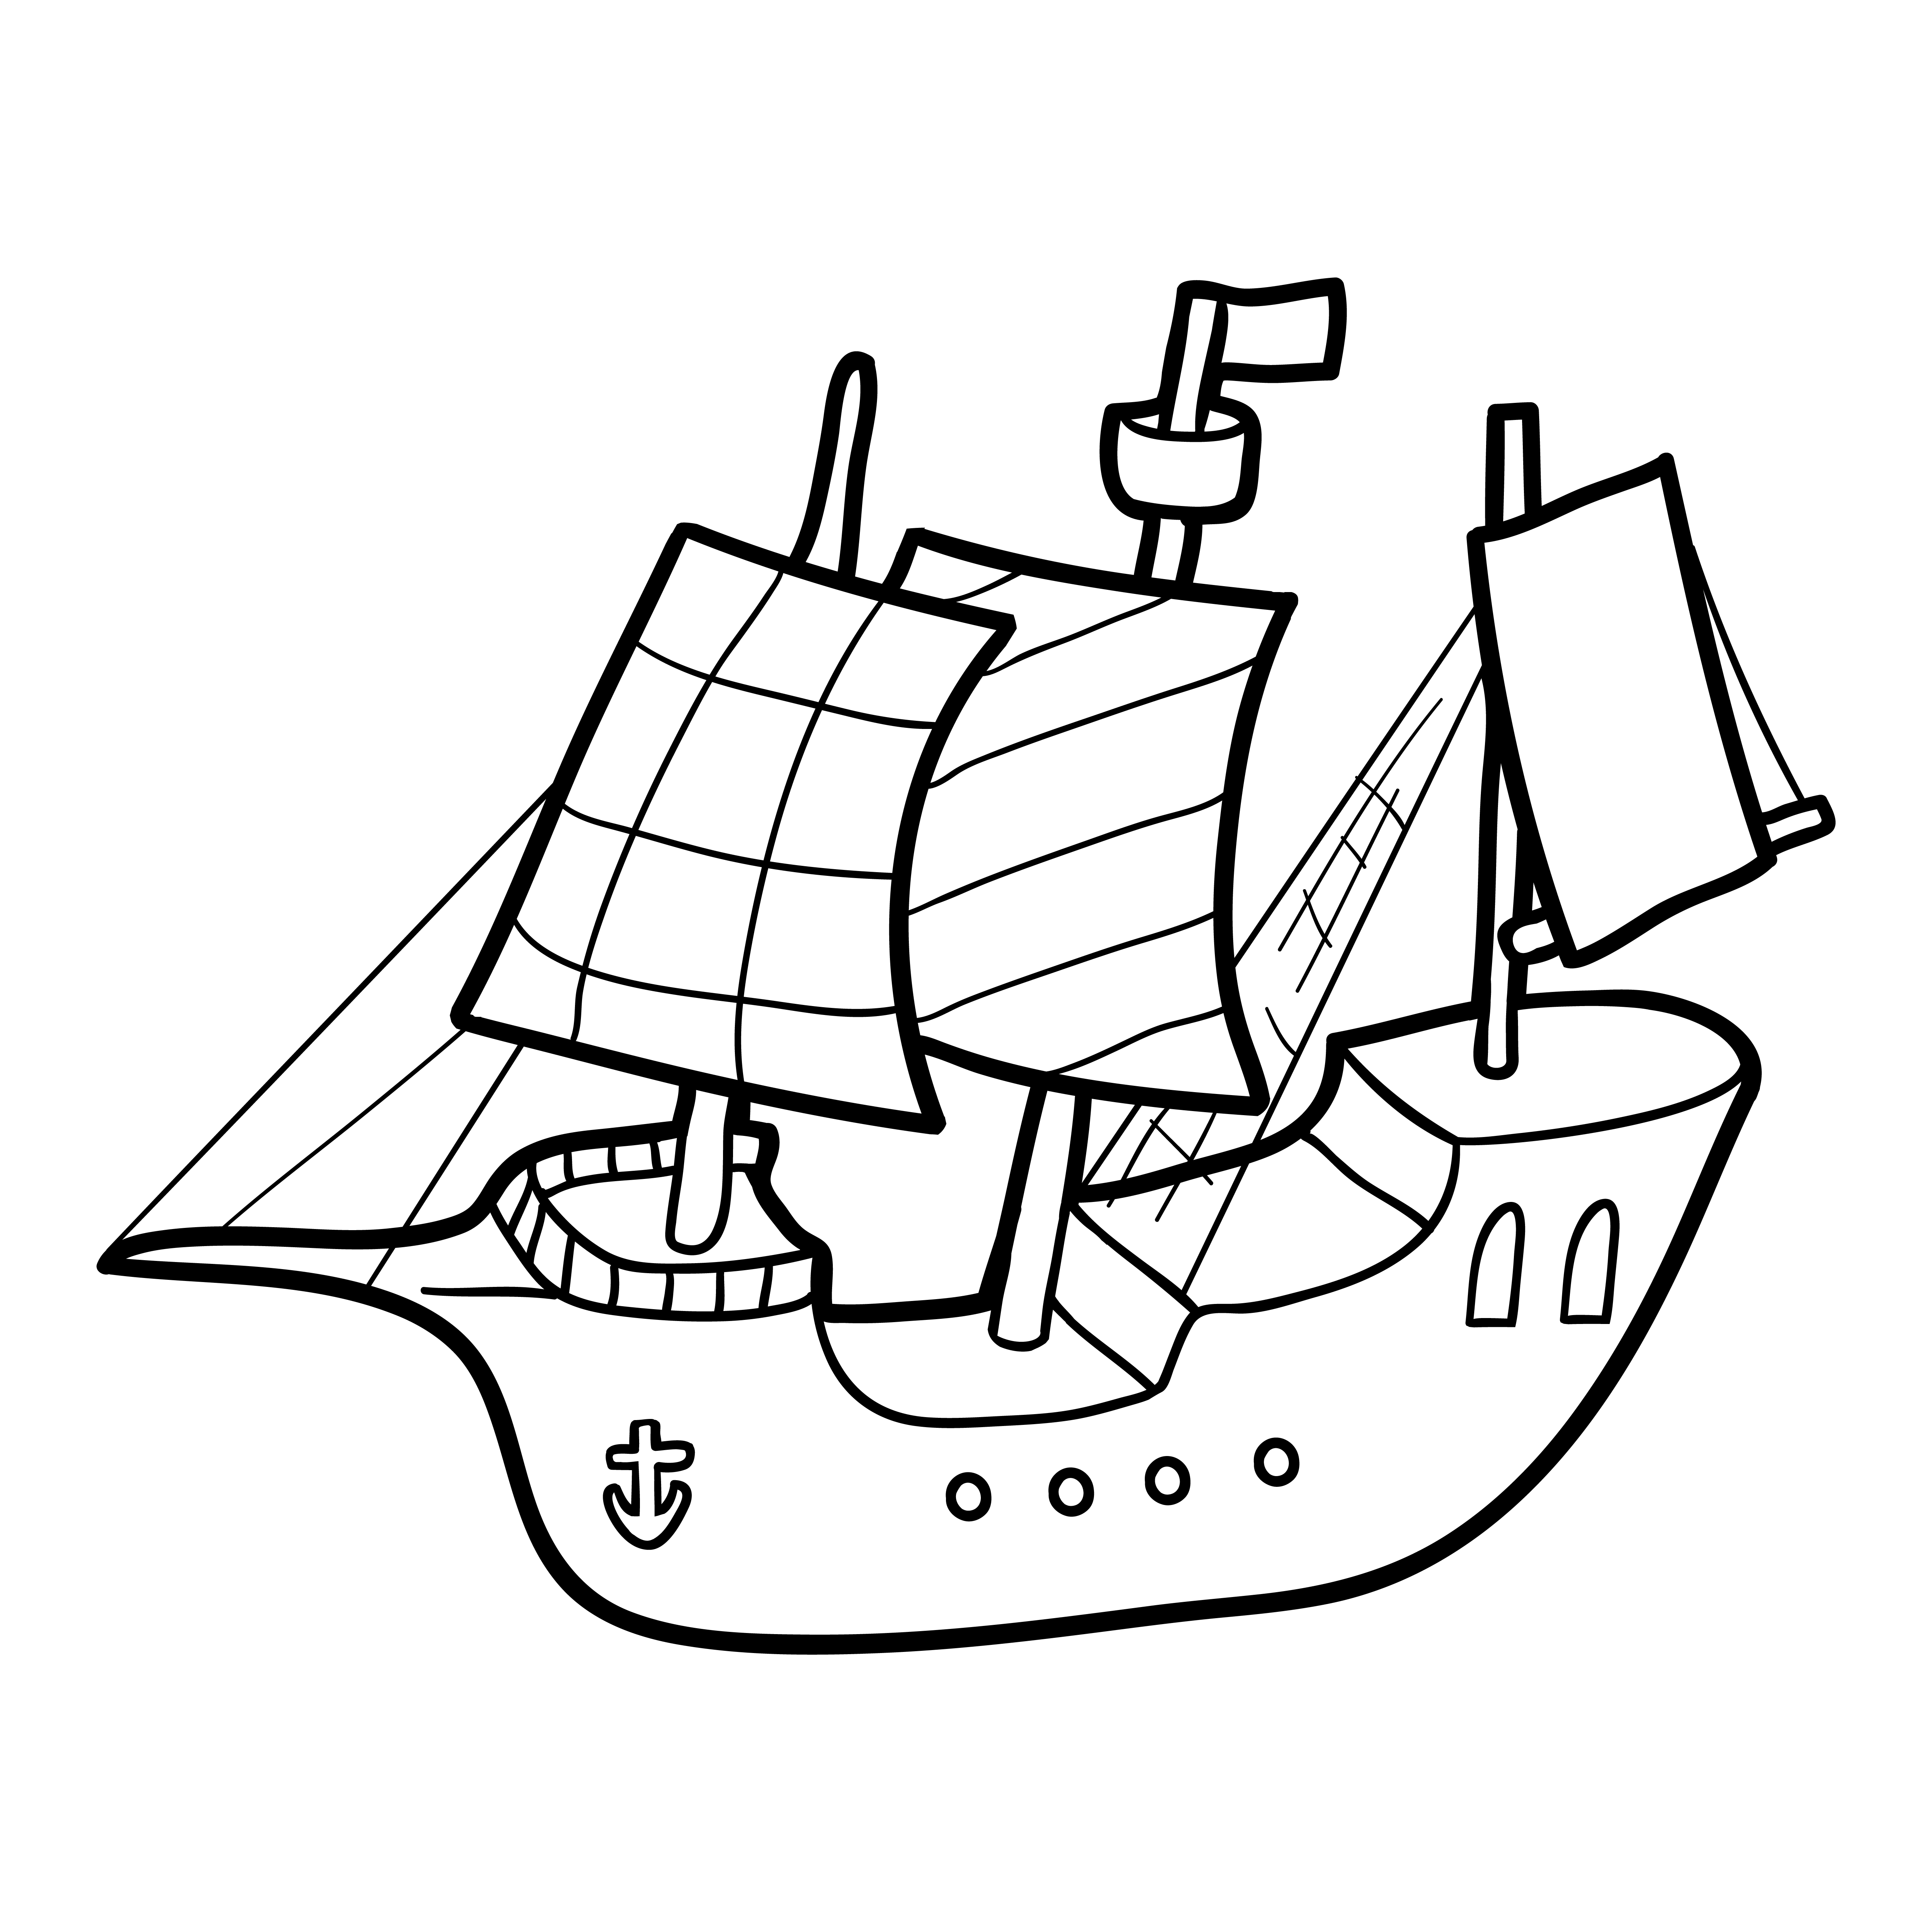 Раскраска игрушечный корабль парусник «Морская гармония» формата А4 в высоком качестве